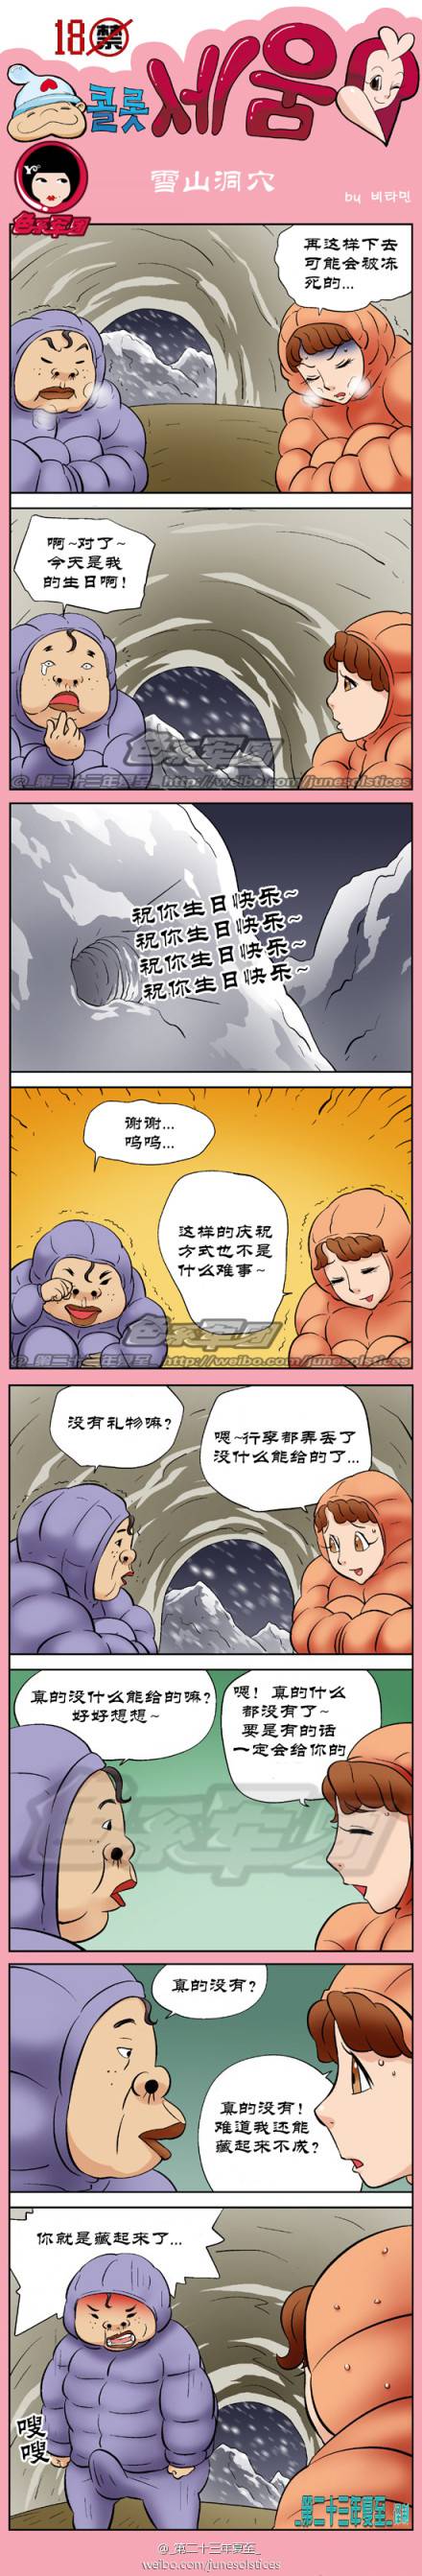 邪恶漫画爆笑囧图第45刊：生日